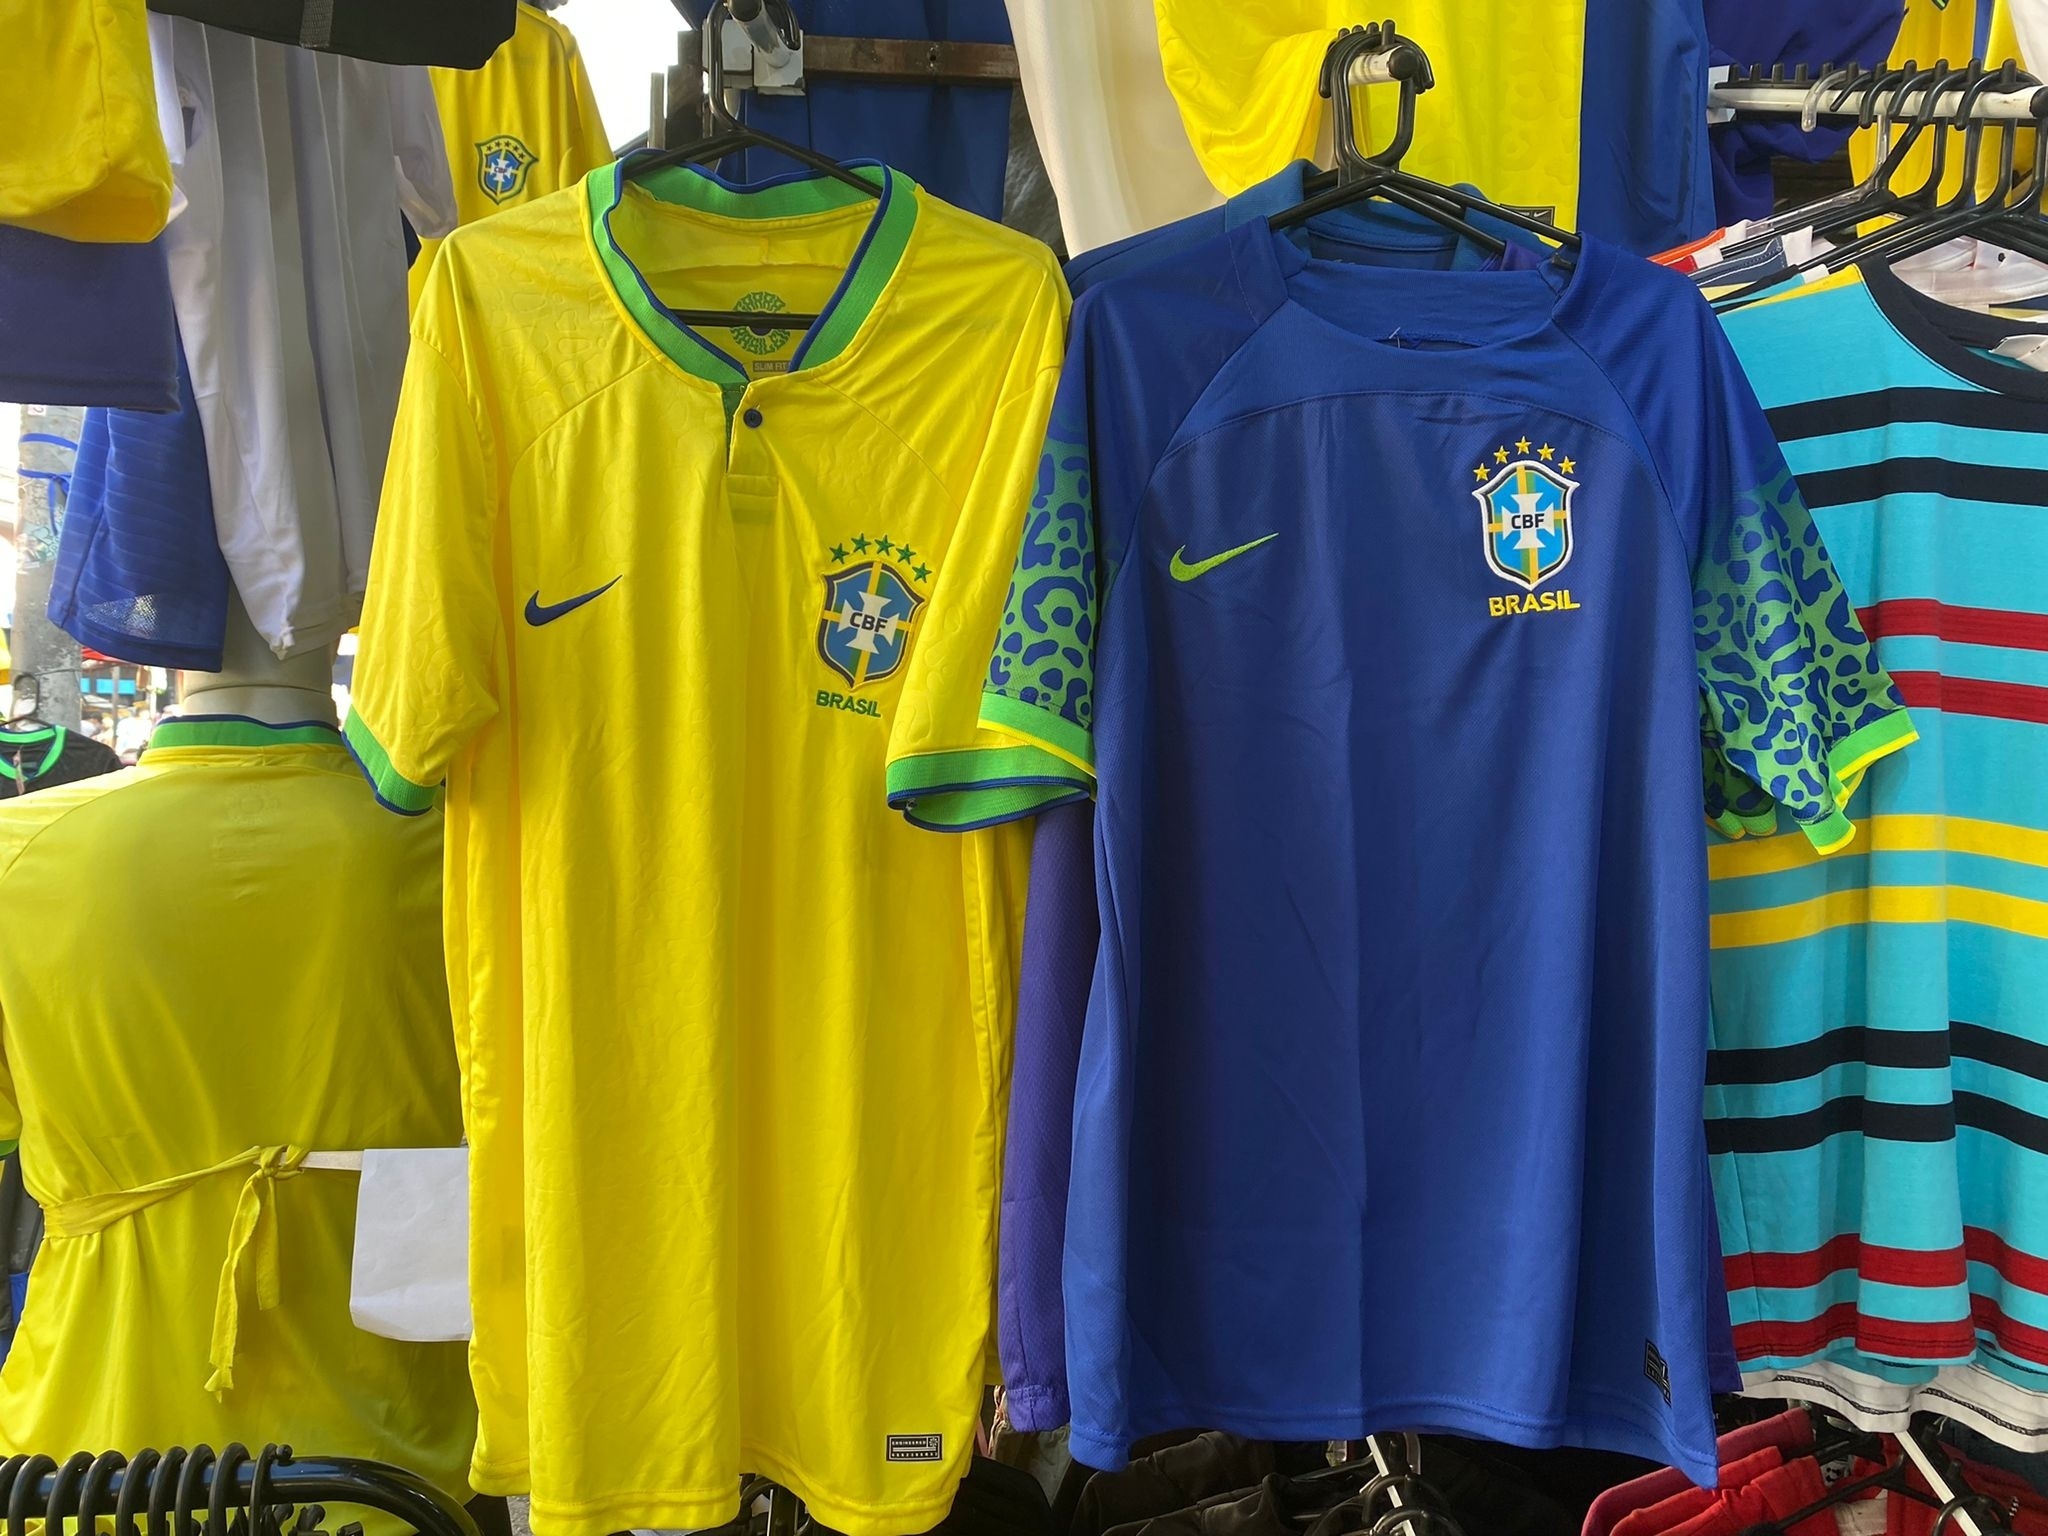 Com Bolsonaro em baixa: amarelinha da seleção dá lugar à camisa azul